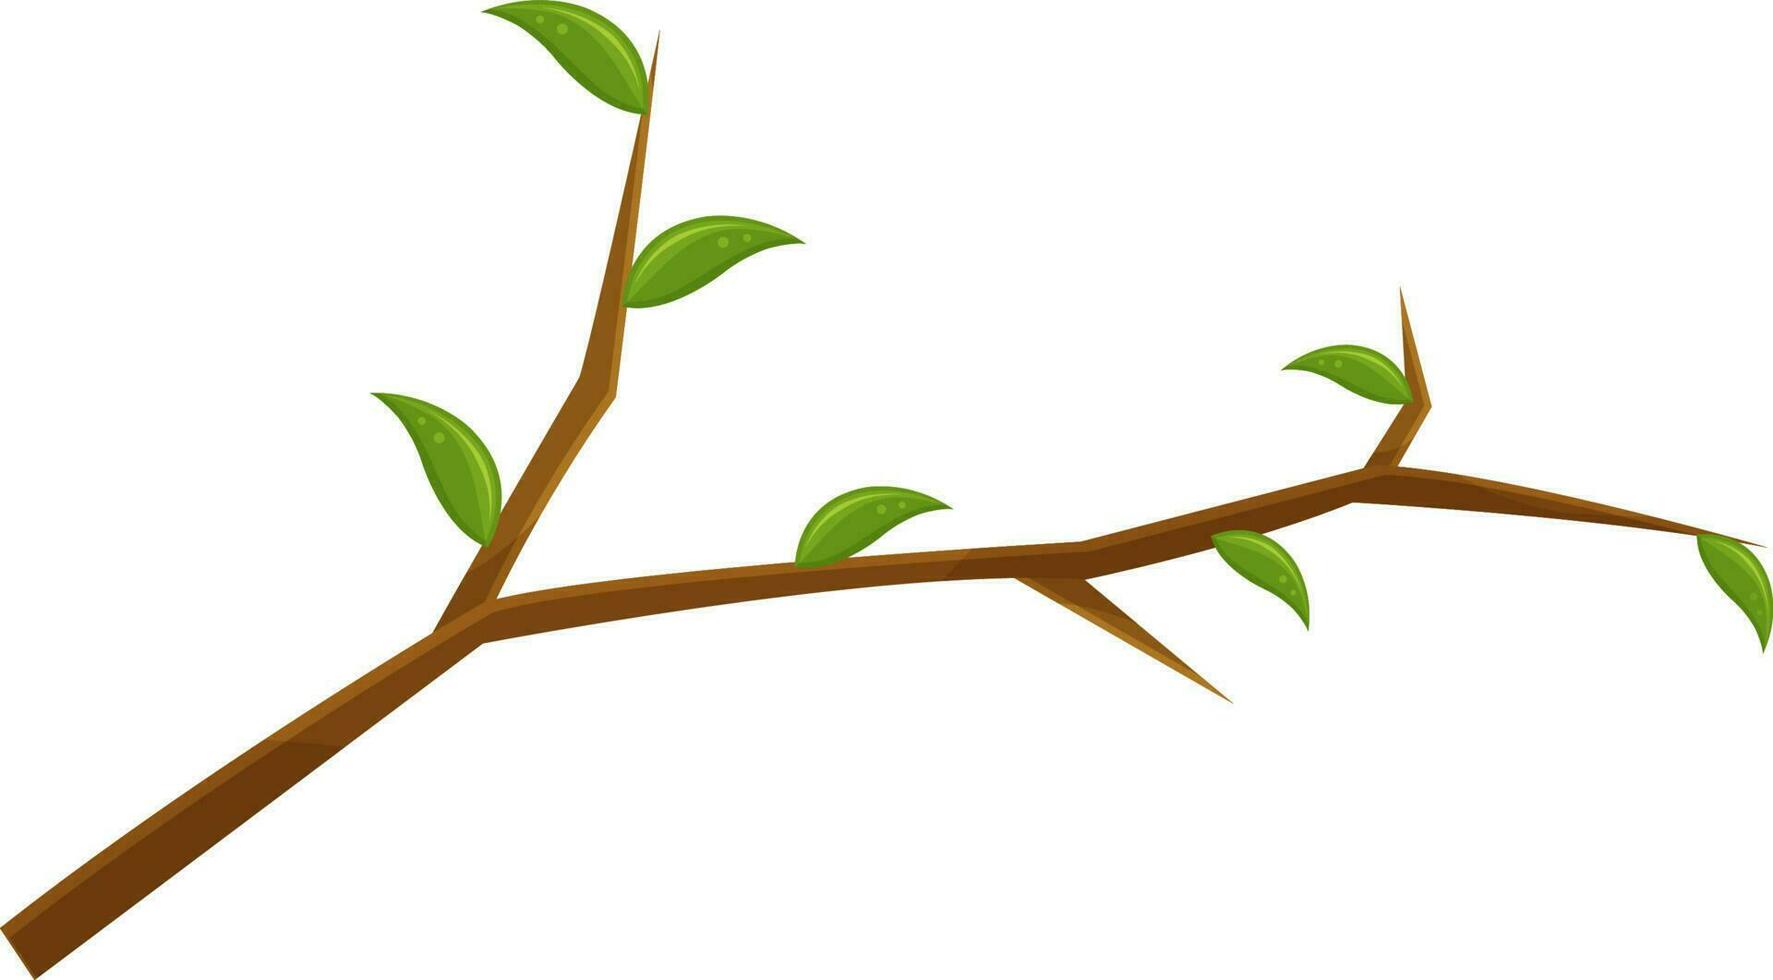 Vektor Illustration von ein Baum Zweig, ein gebrochen Zweig, ein hölzern Knoten mit Blätter